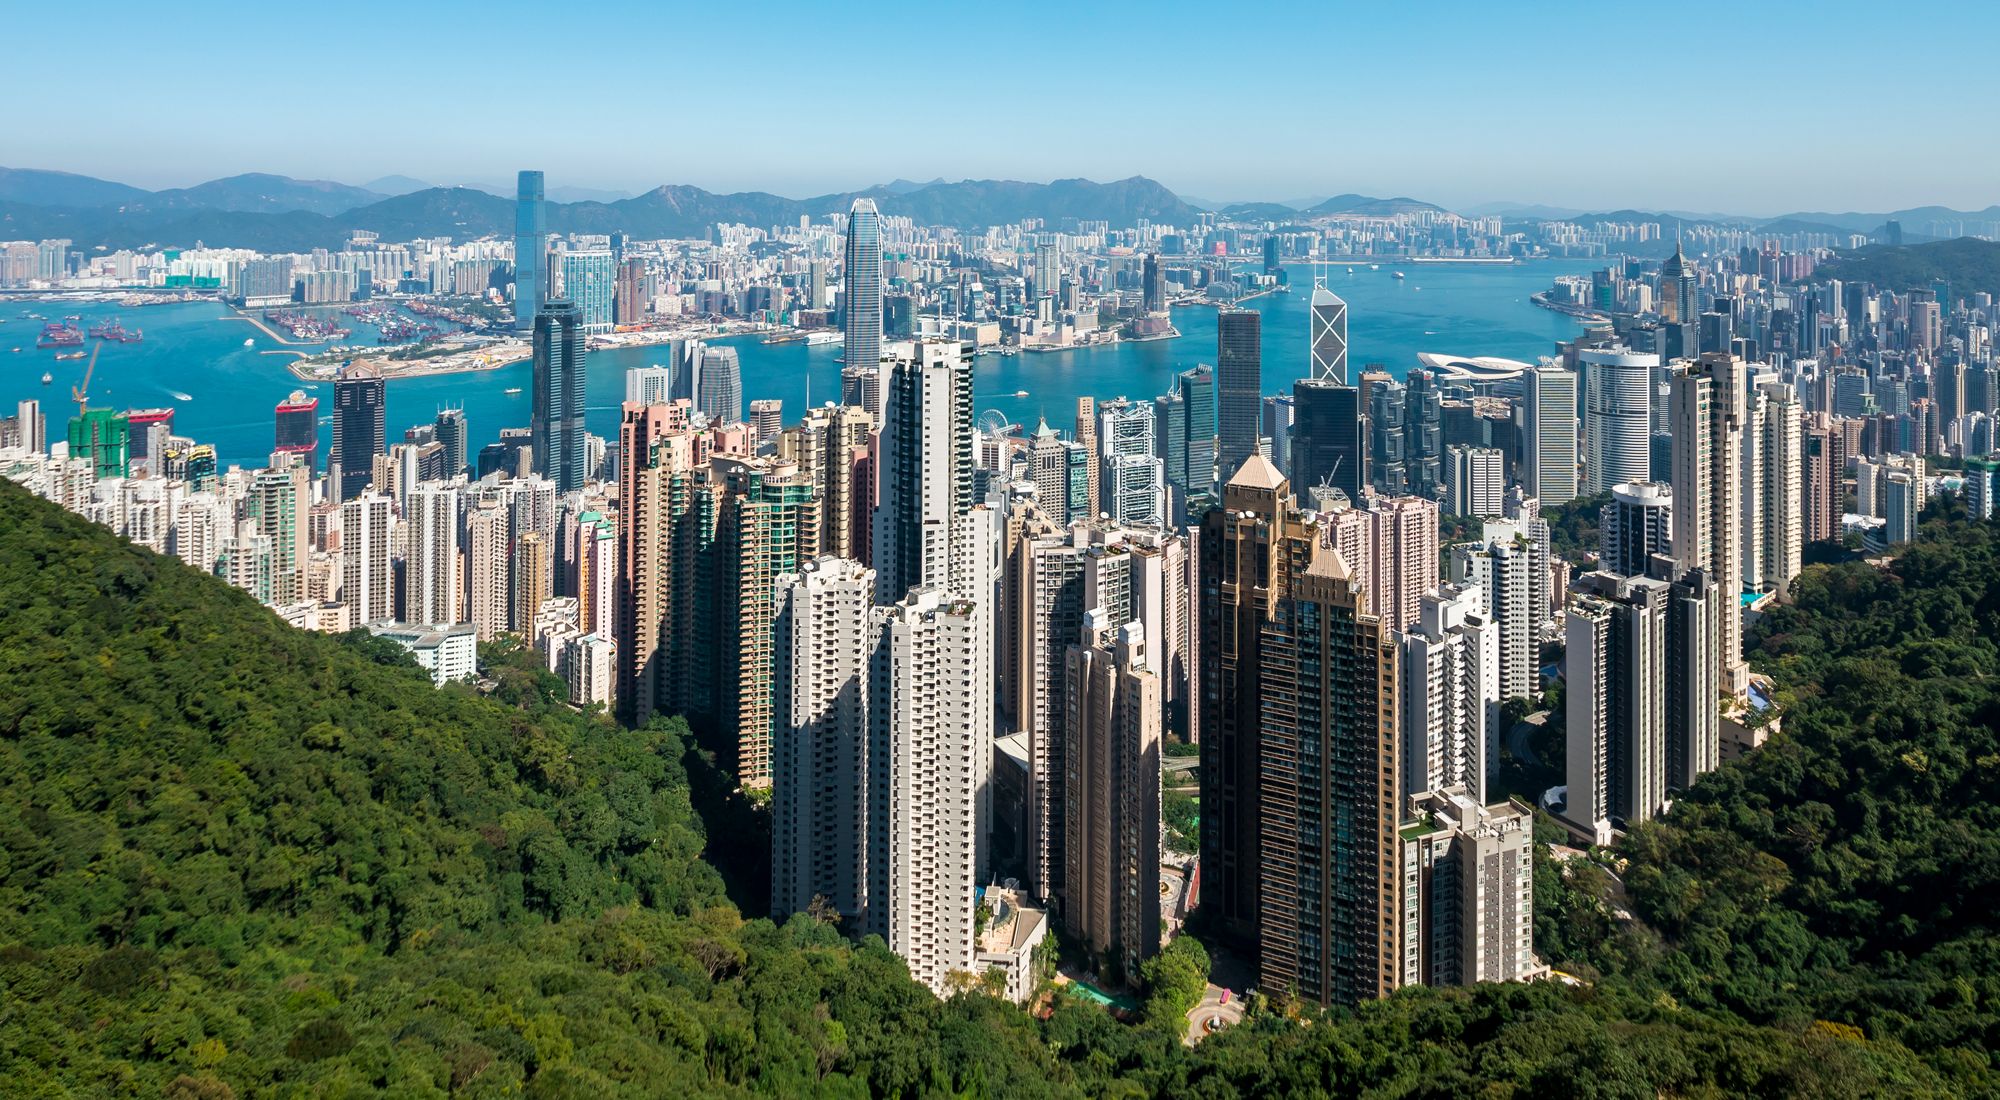 City Nature 2021: Hong Kong · iNaturalist